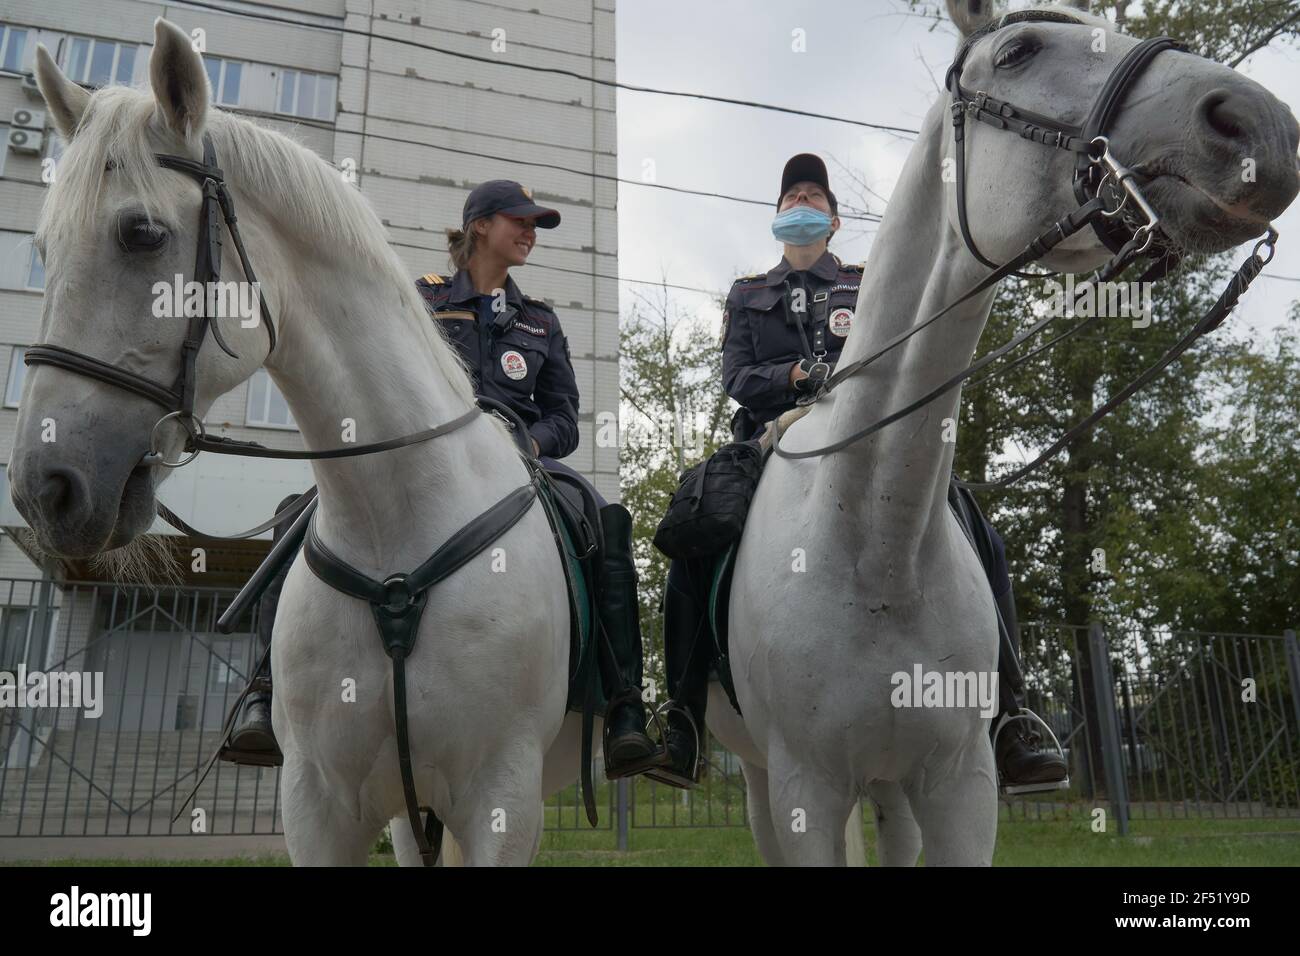 Moskau, Russland. August 2020, 30th. Pferdepatrouille mit Polizeimädchen im östlichen Verwaltungsbezirk von Moskau. (Foto von Mihail Siergiejevicz/SOPA Images/Sipa USA) Quelle: SIPA USA/Alamy Live News Stockfoto